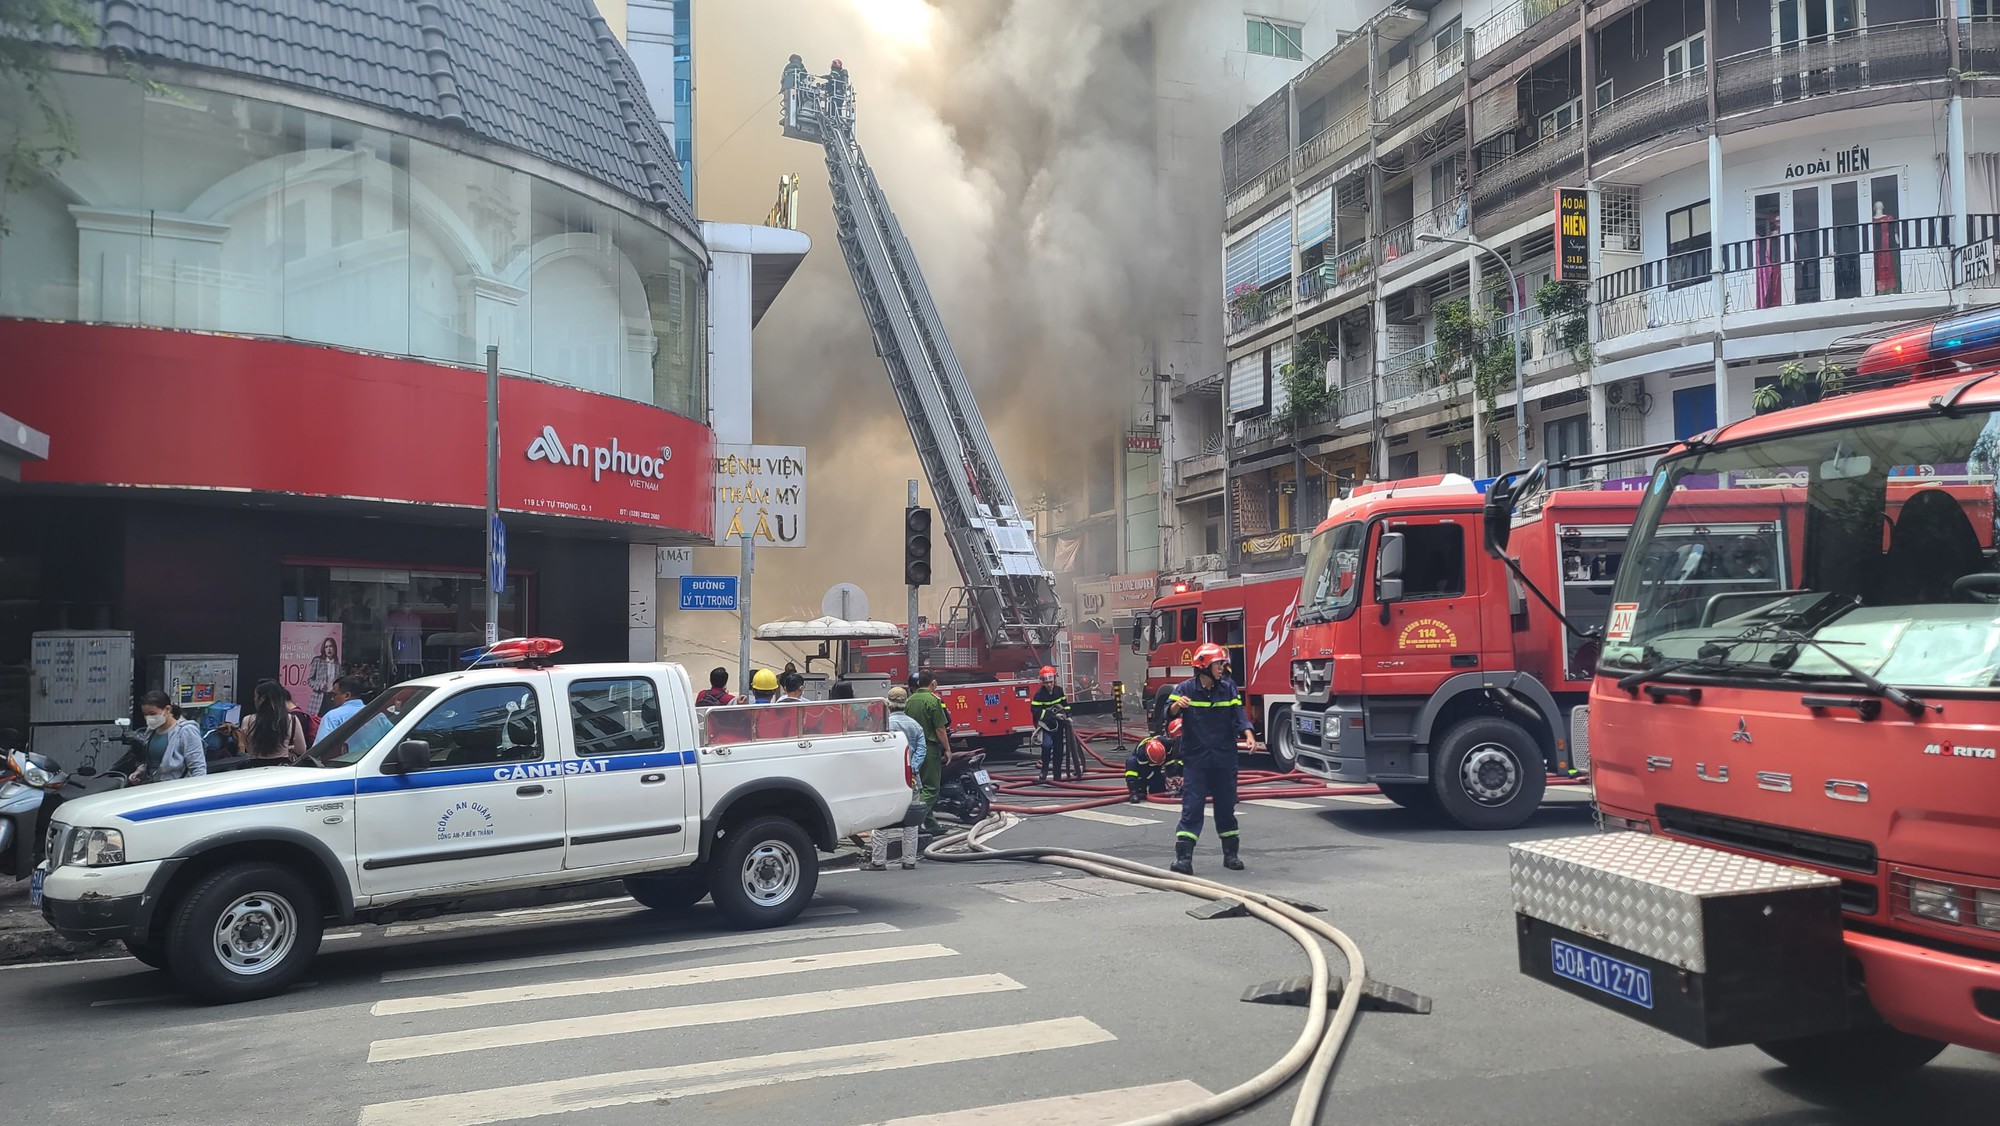 Hiện trường vụ cháy lớn một quán bar gần chợ Bến Thành: Không có thương vong, khói đen vẫn bốc nghi ngút - Ảnh 1.